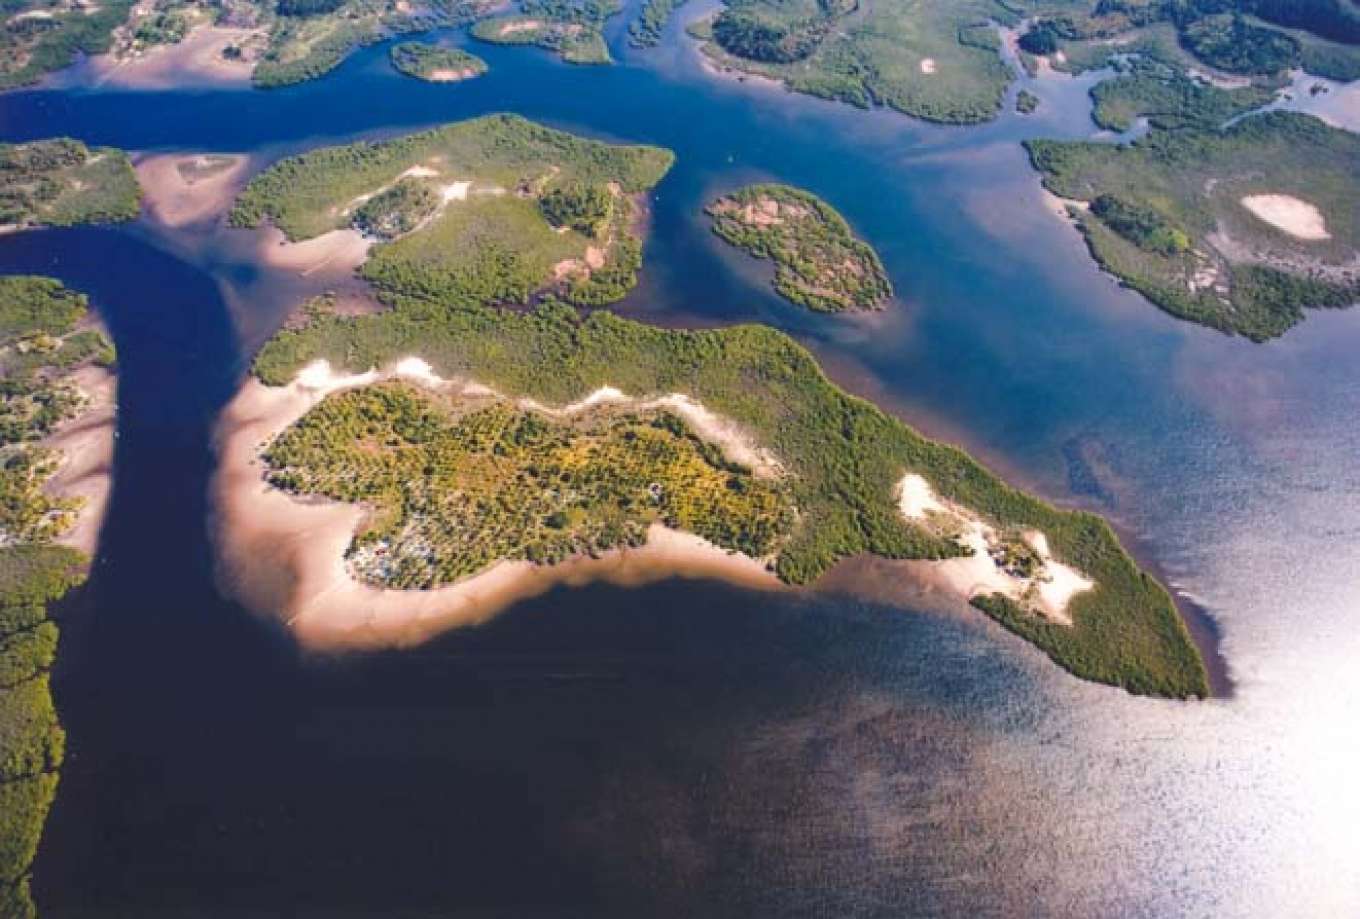 Fazenda Cipo Island - Brazil, South America - Private Islands for Sale